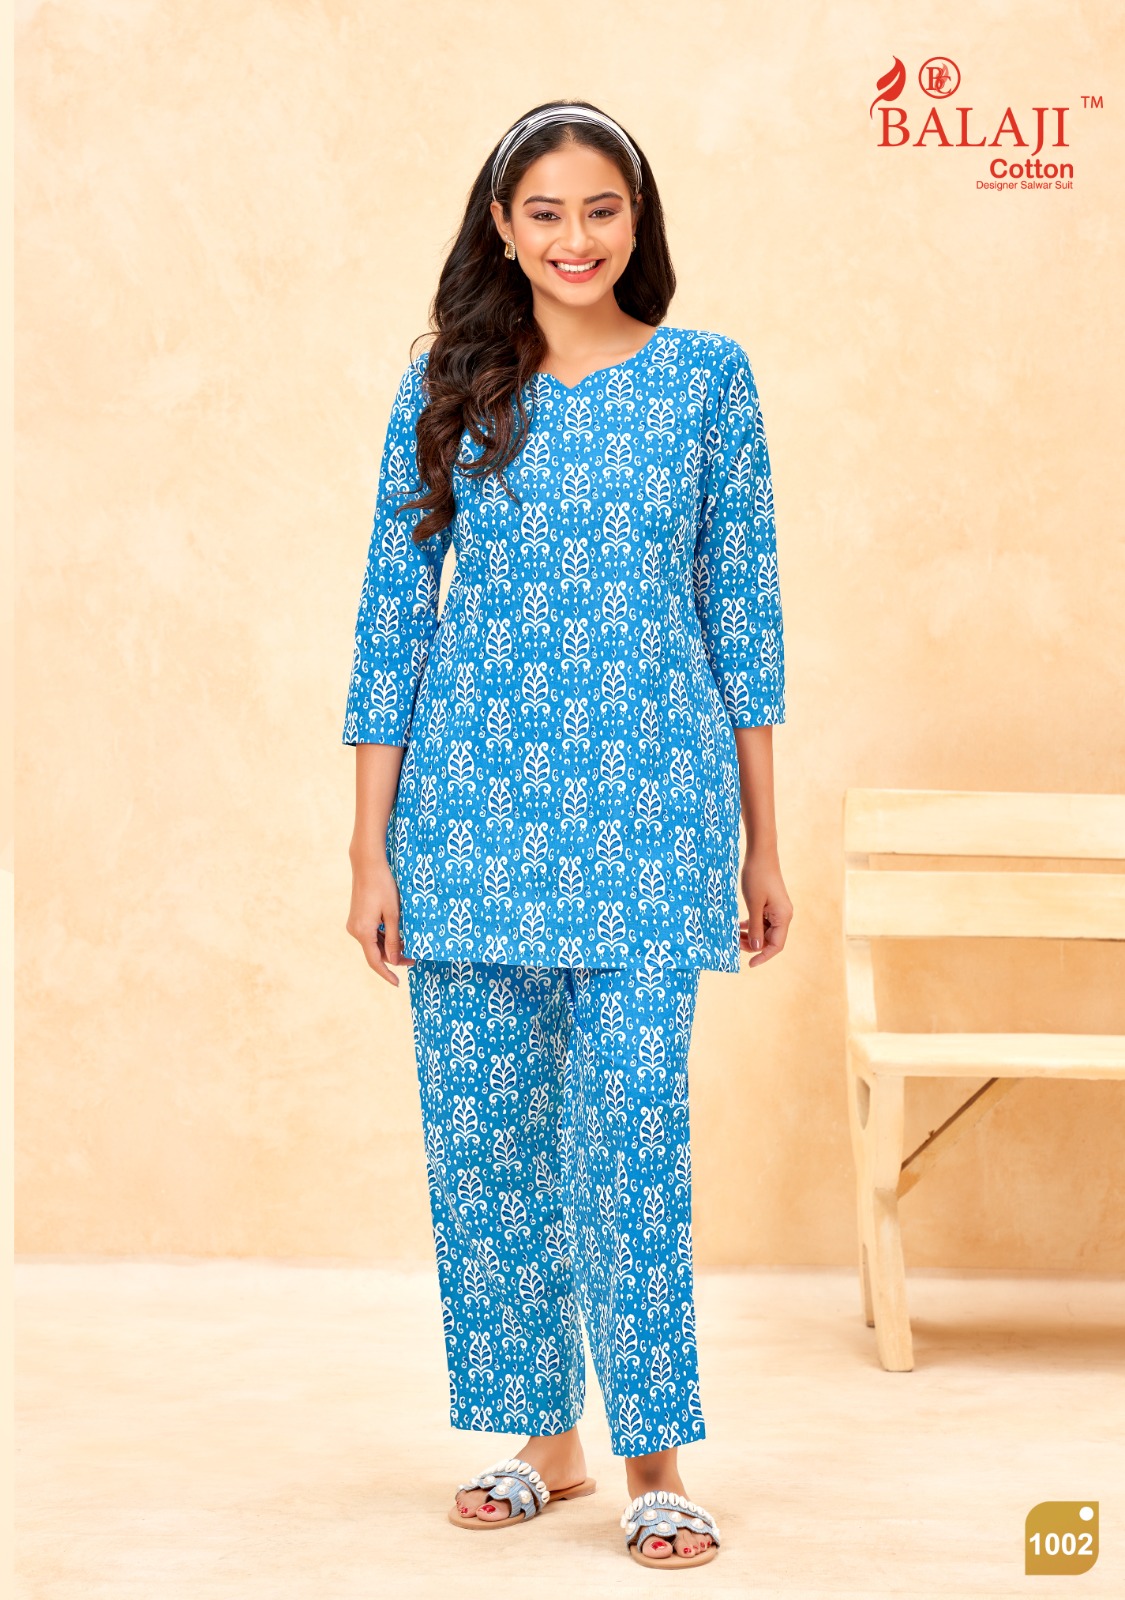 Maryam Balaji Cotton Co Ord Set Manufacturer Wholesaler